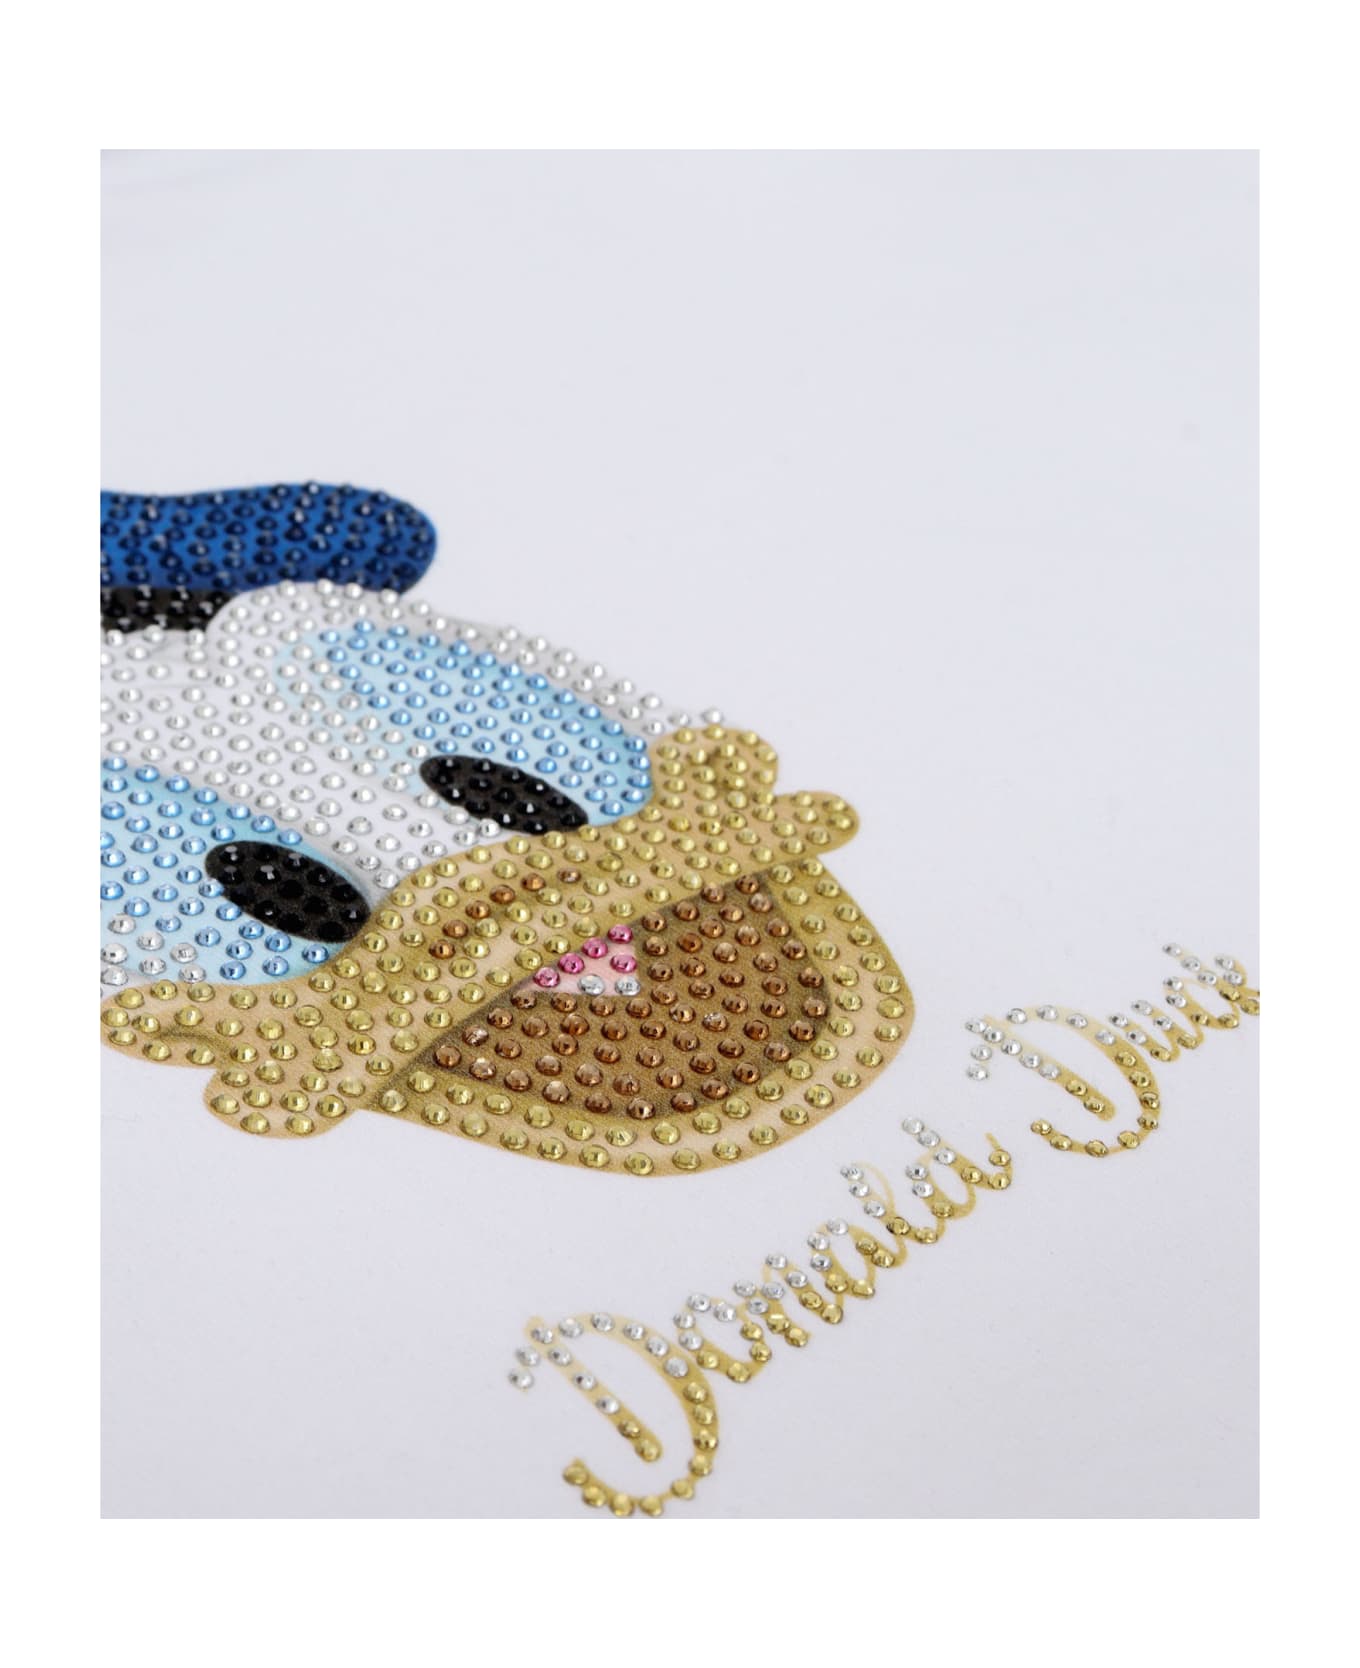 Monnalisa White Donald Duck Sweatshirt - WHITE ニットウェア＆スウェットシャツ